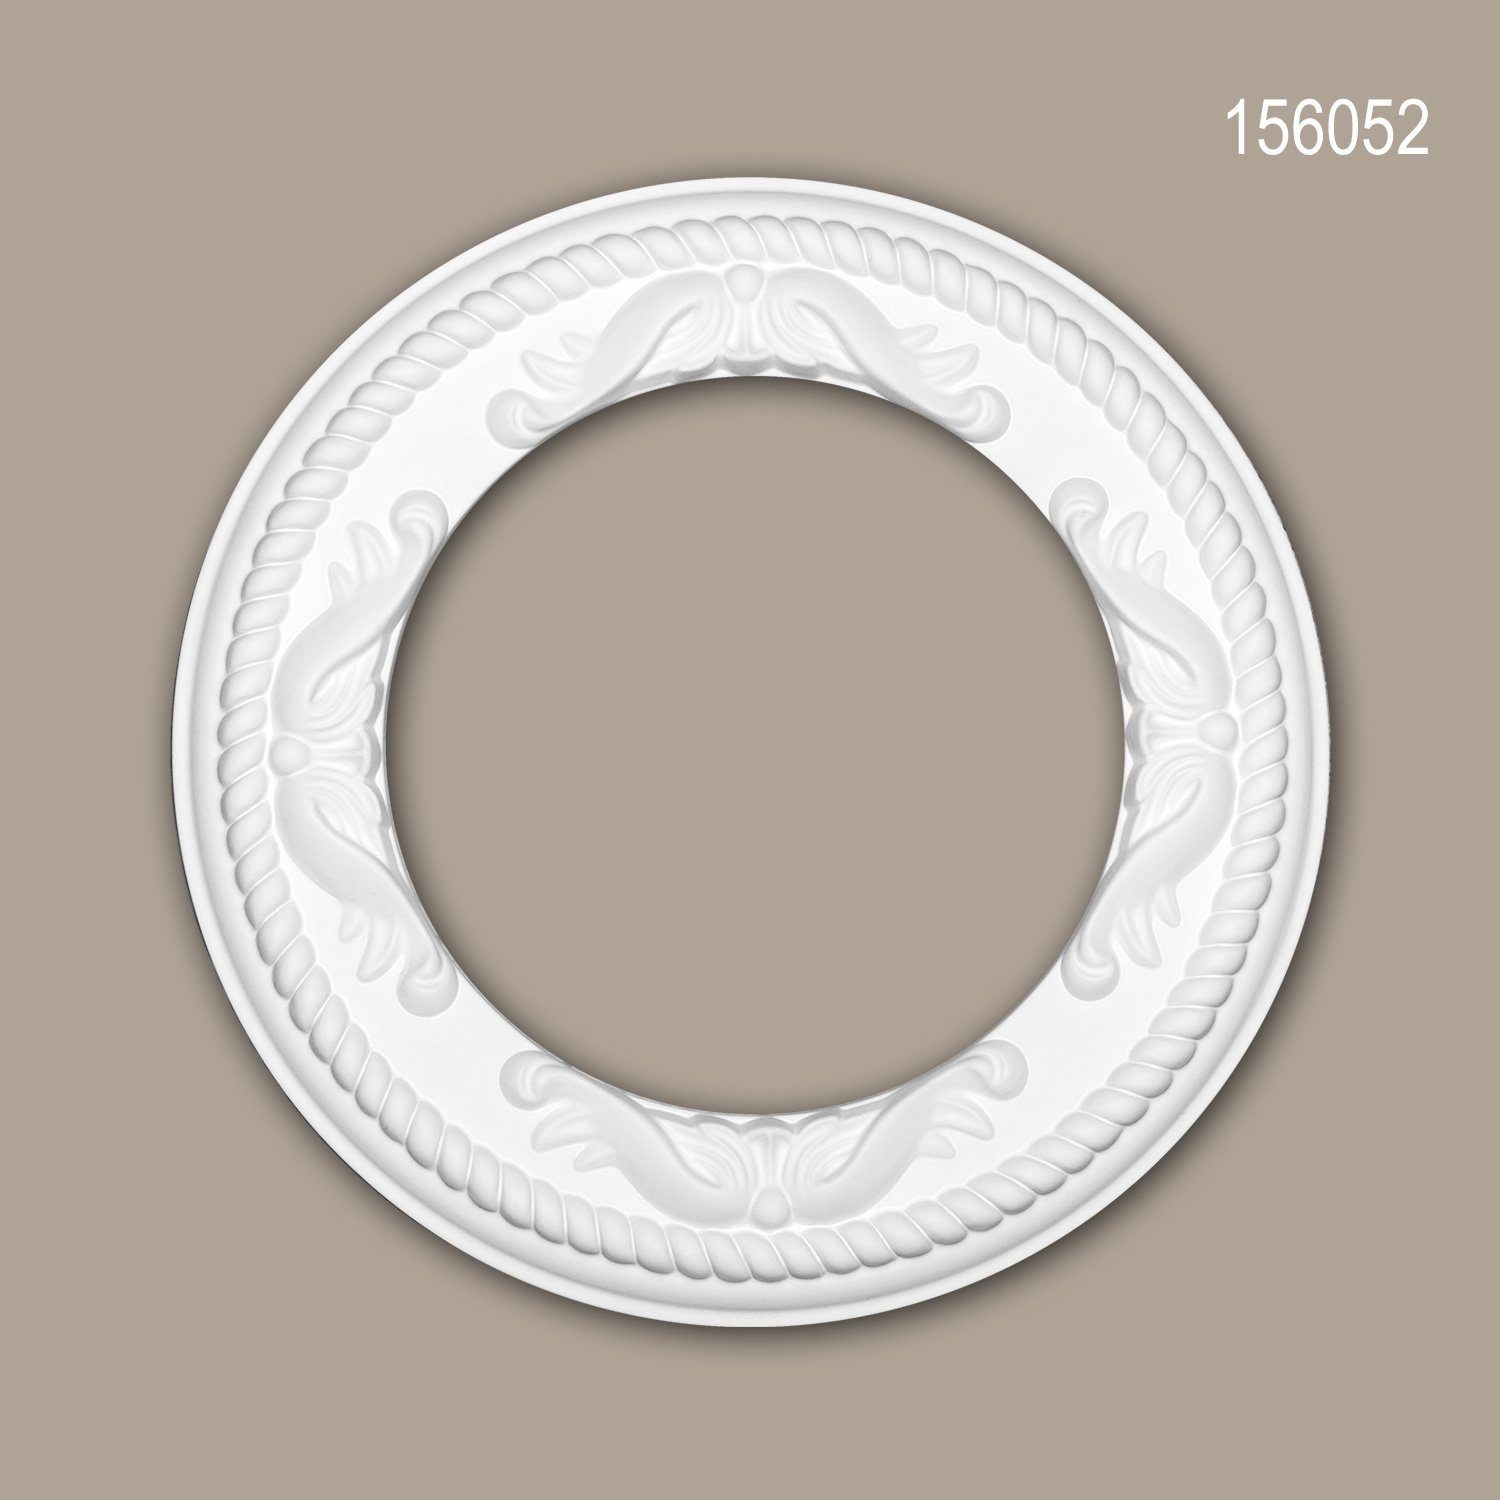 Profhome Decken-Rosette 156052 (Rosette, 1 St., Deckenrosette, Medallion, Stuckrosette, Deckenelement, Zierelement, Durchmesser 31 cm), weiß, vorgrundiert, Stil: Rokoko / Barock